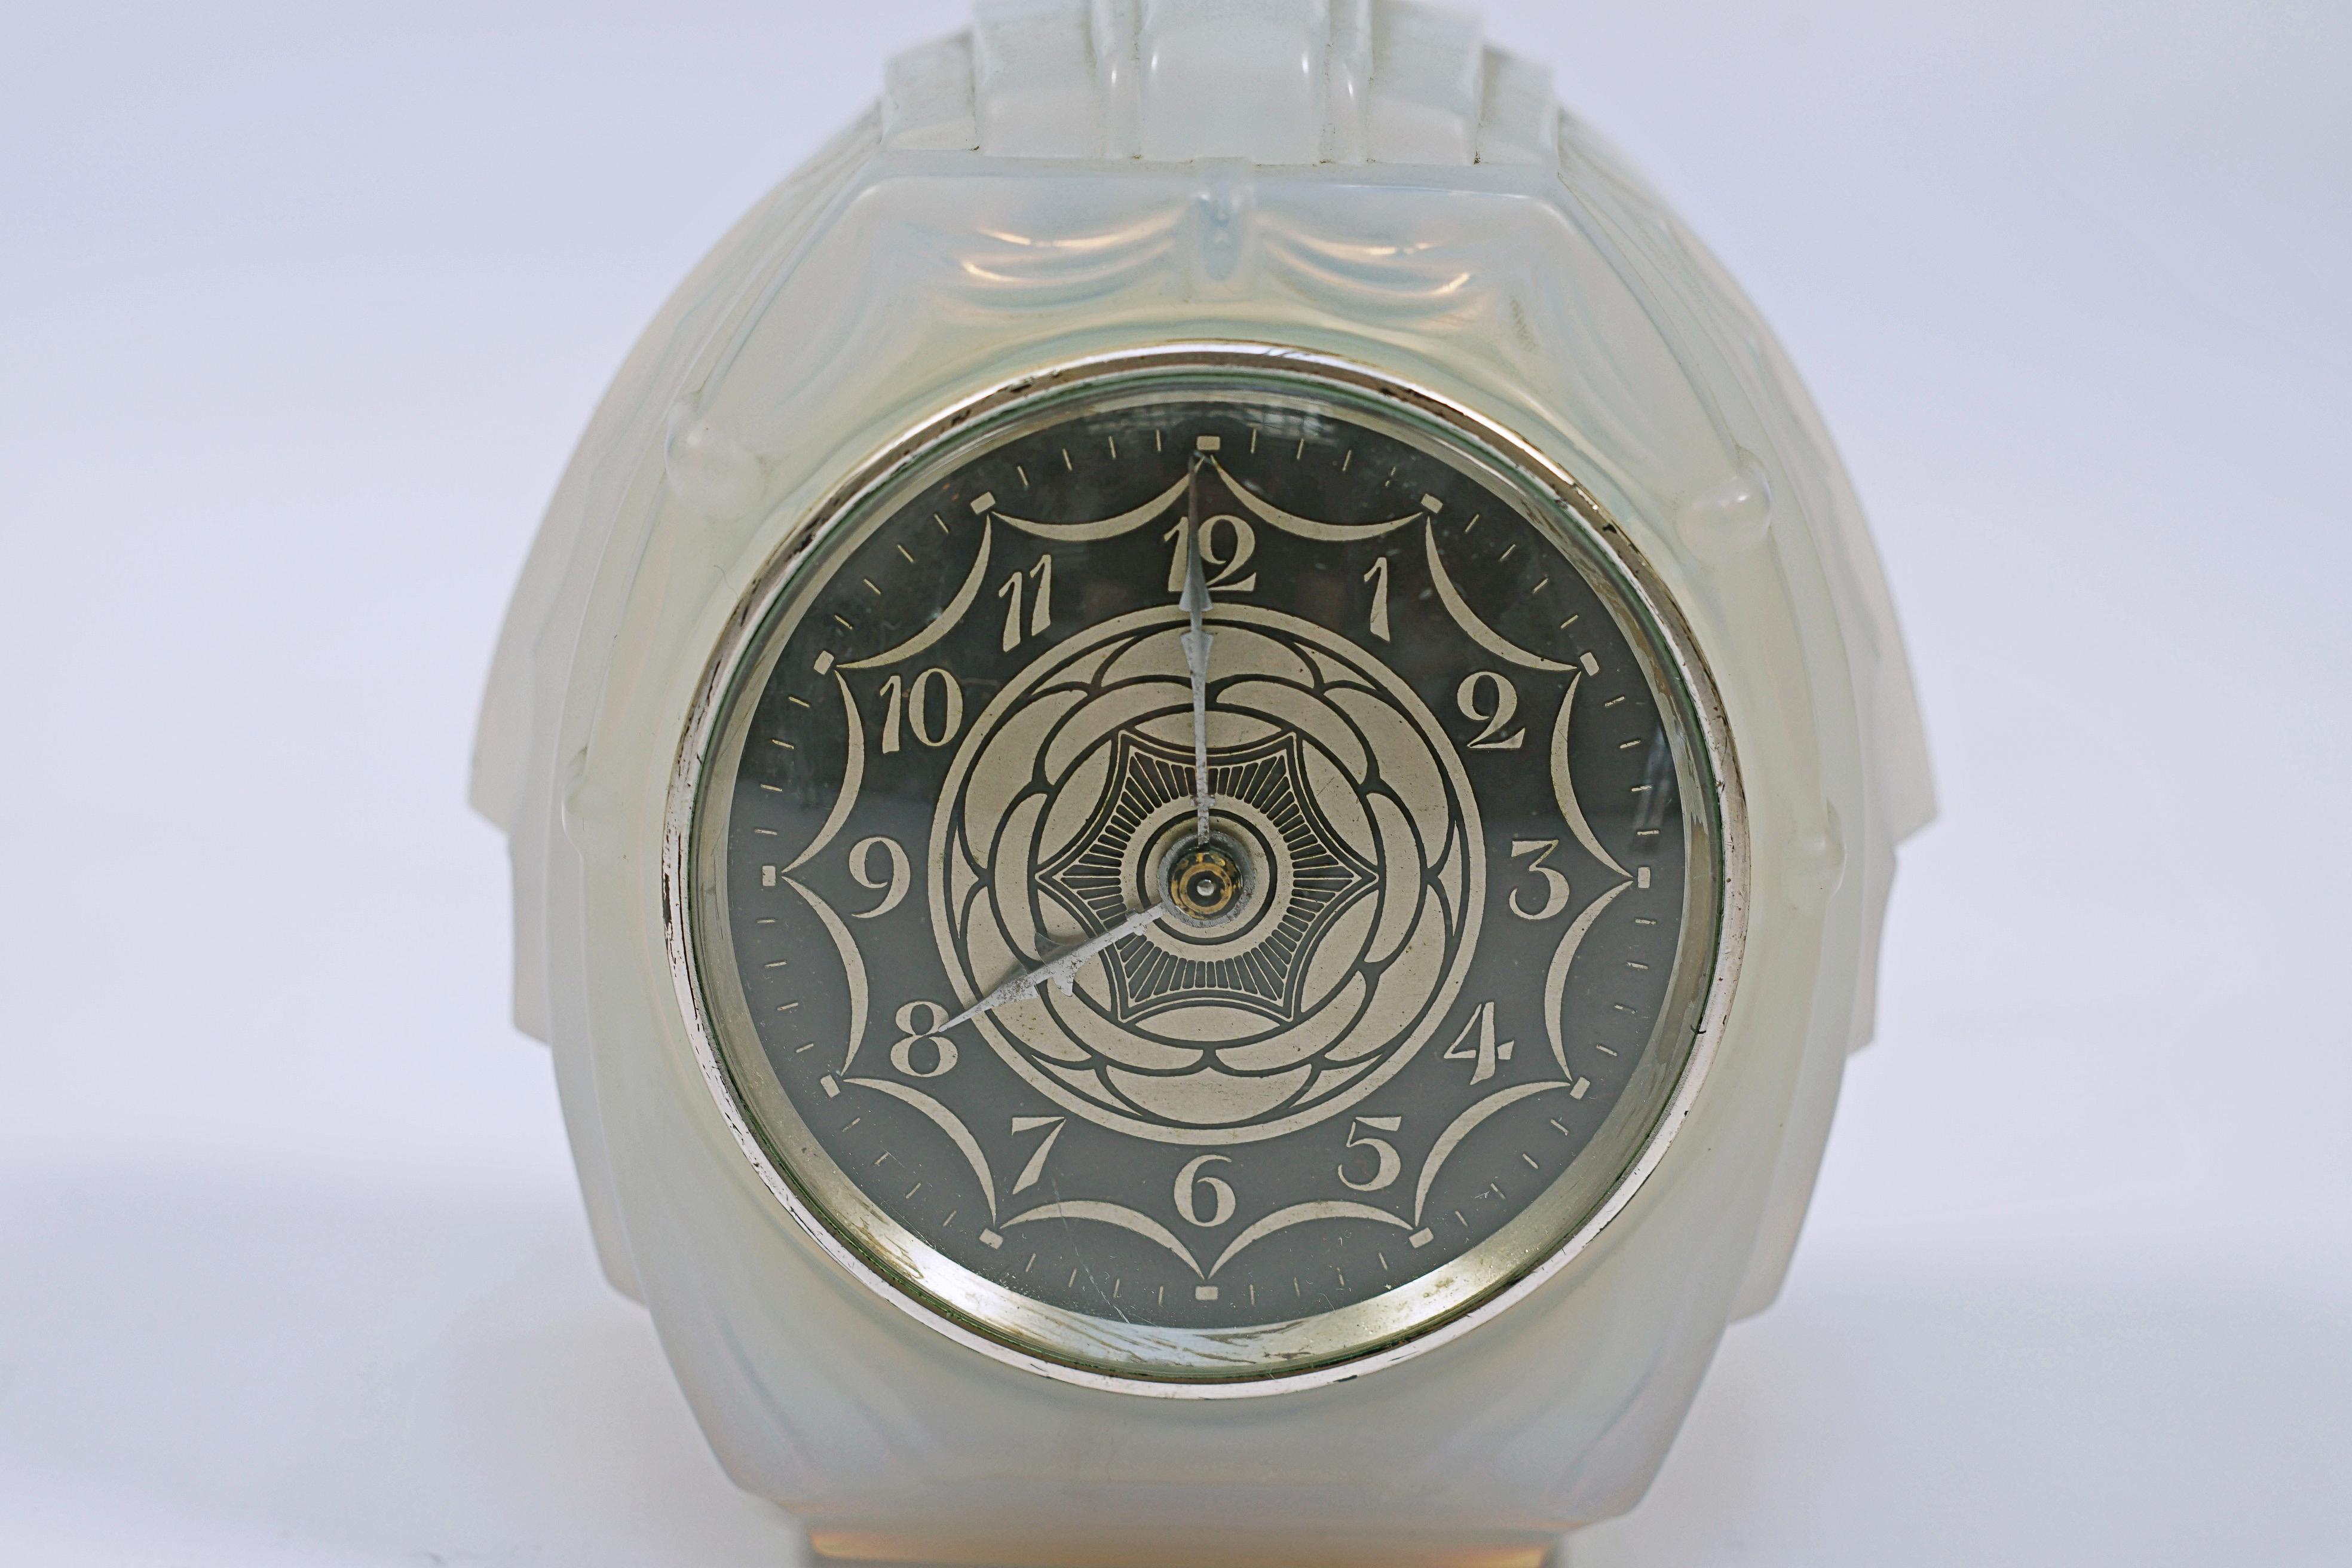 Art Deco Uhr aus Milchglas, mit emailliertem und versilbertem Bronzezifferblatt, hergestellt von Sabino. Unterzeichnet Sabino, Maschine EC, Frankreich.

Frankreich, CIRCA 1920.